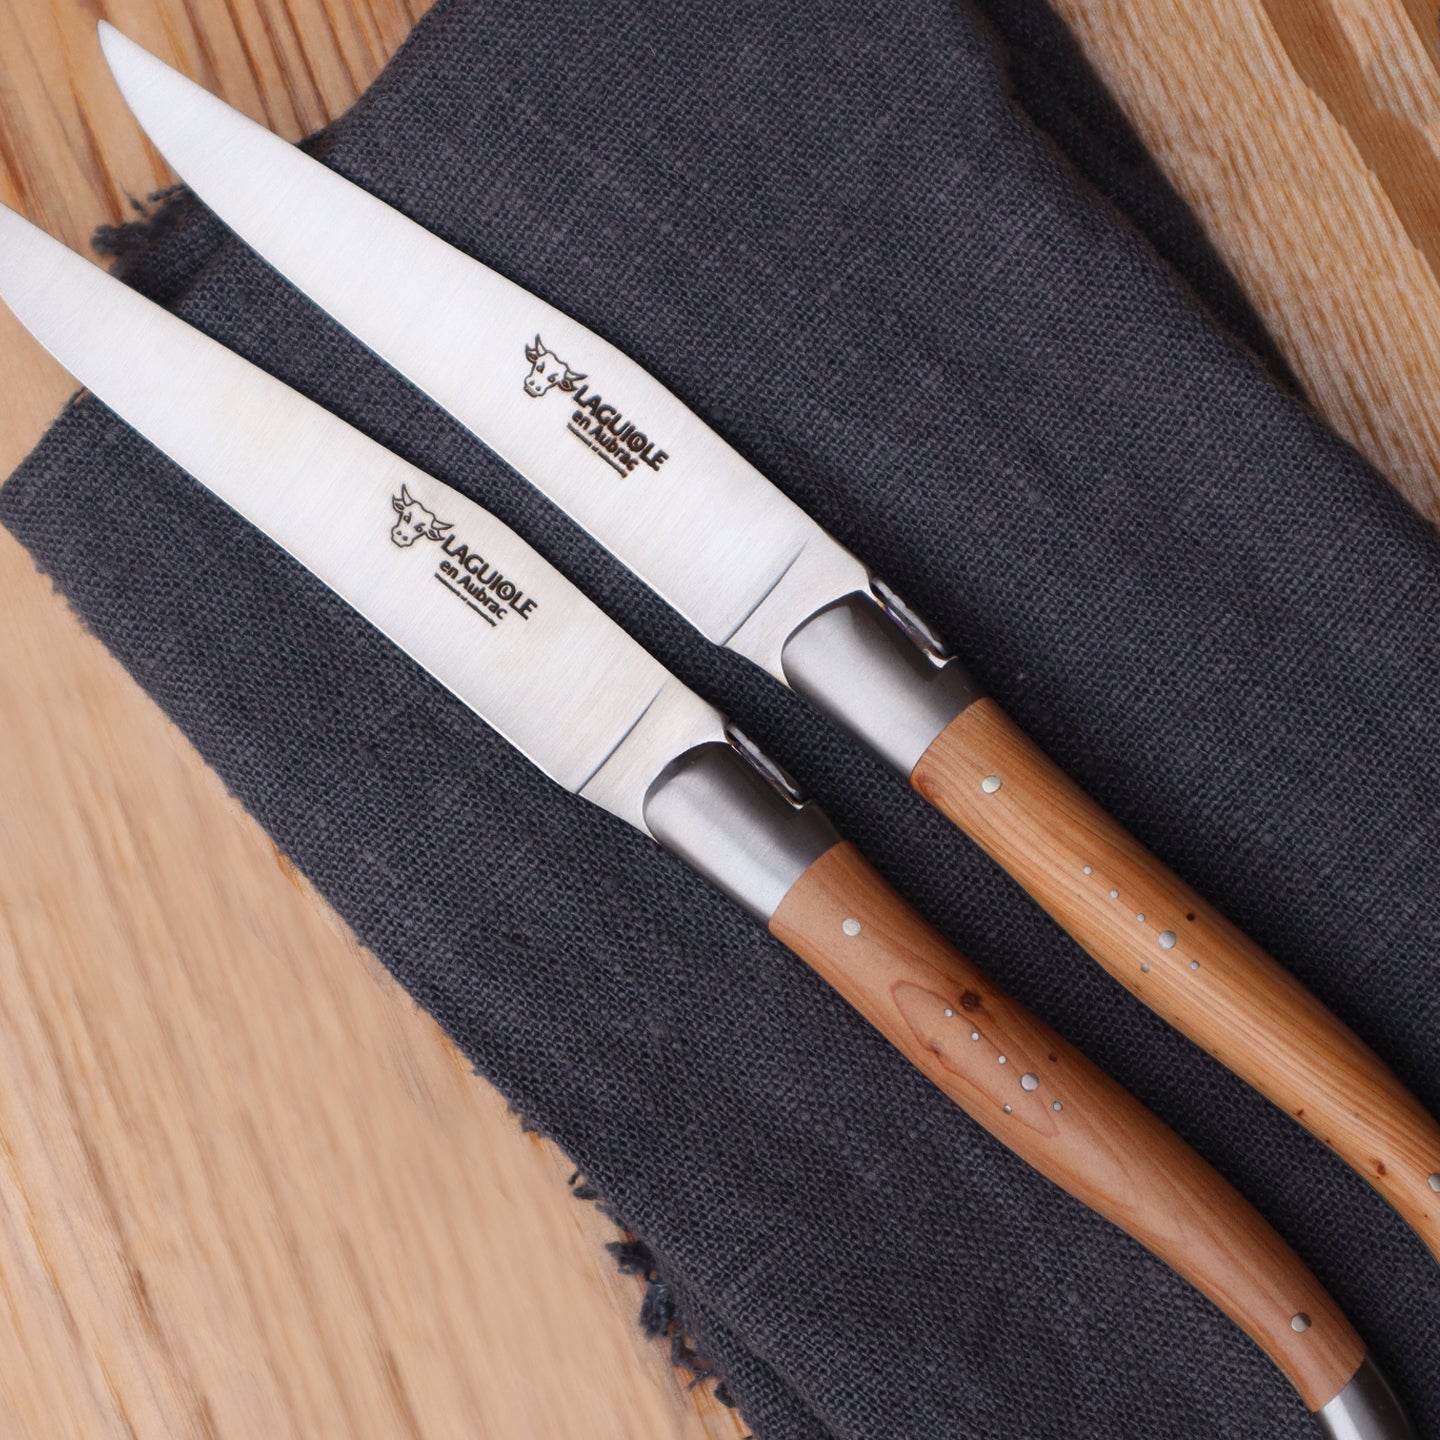 Laguiole en Aubrac Steak Knives with Juniper Handle | Borough Kitchen